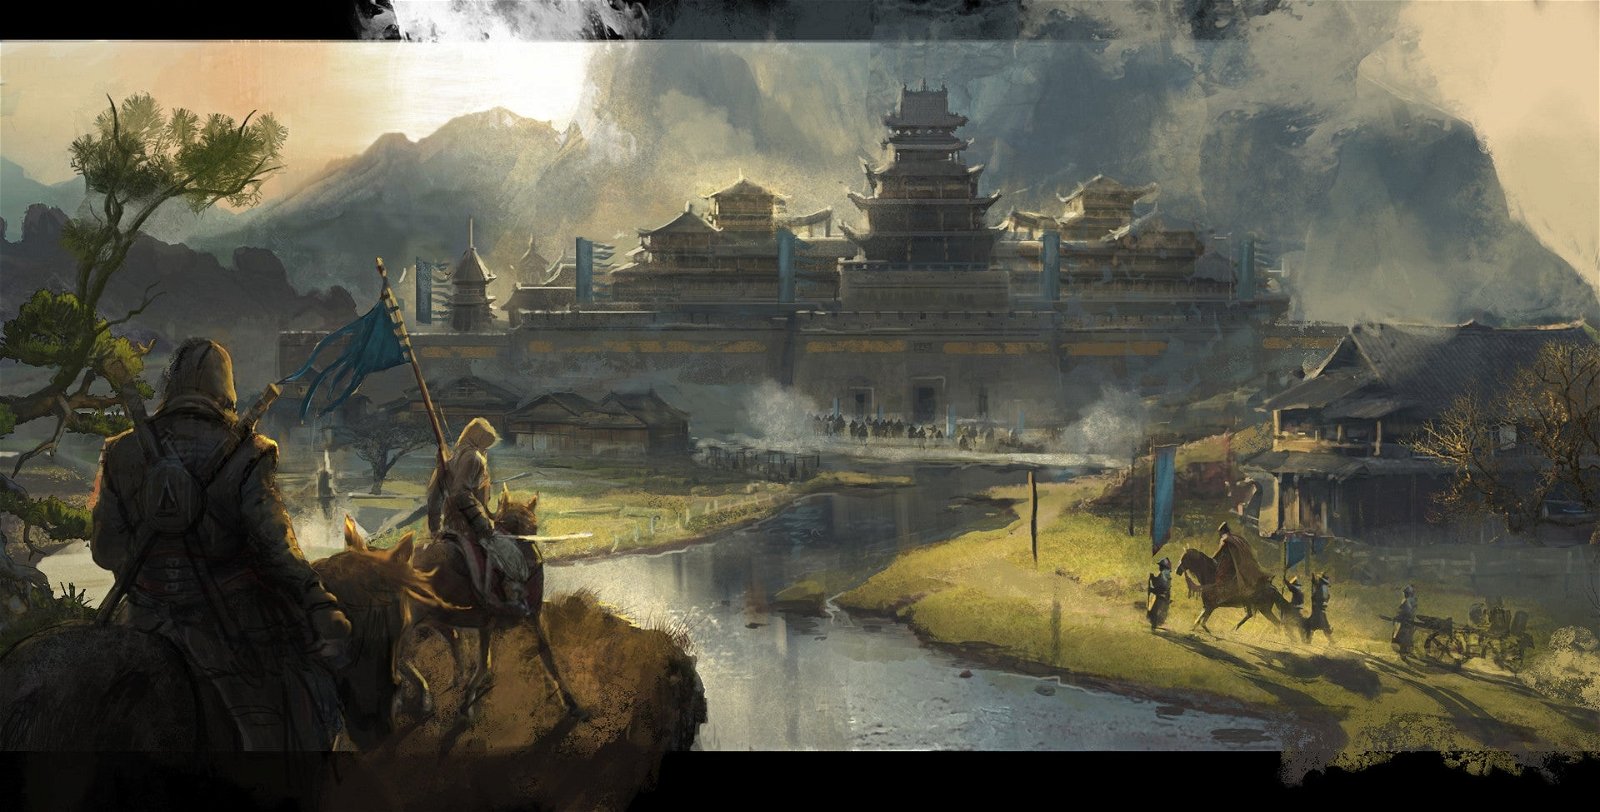 Posible arte conceptual de un Assassin's Creed ambientado en China o Japón